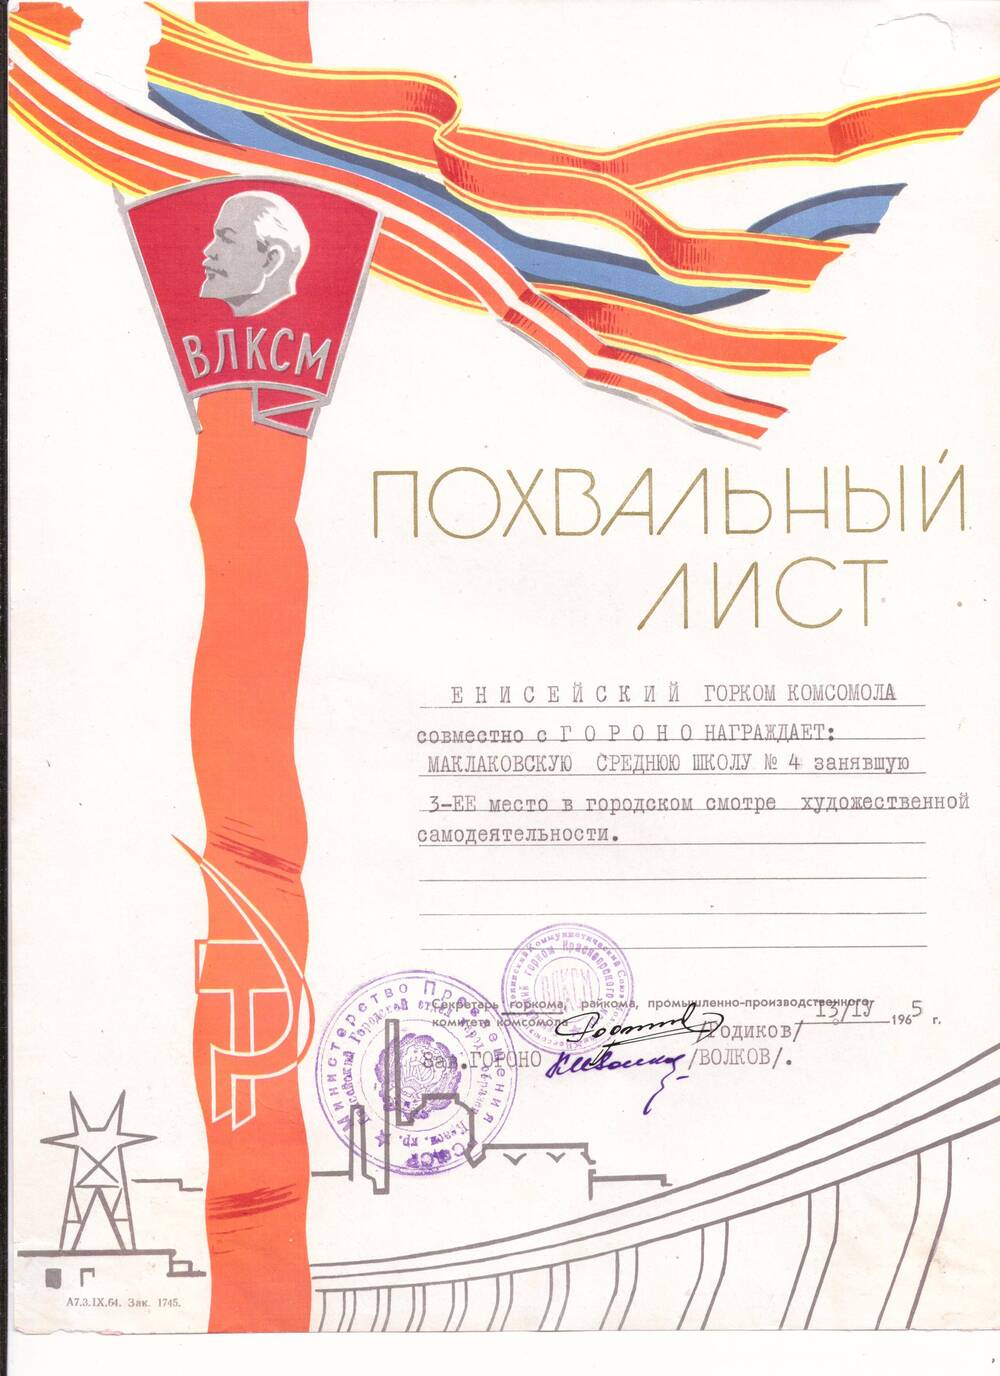 Лист похвальный награждает Маклаковскую среднюю школу № 4, занявшую 3 место в городском смотре художественной самодеятельности, 13 апреля 1965 г.